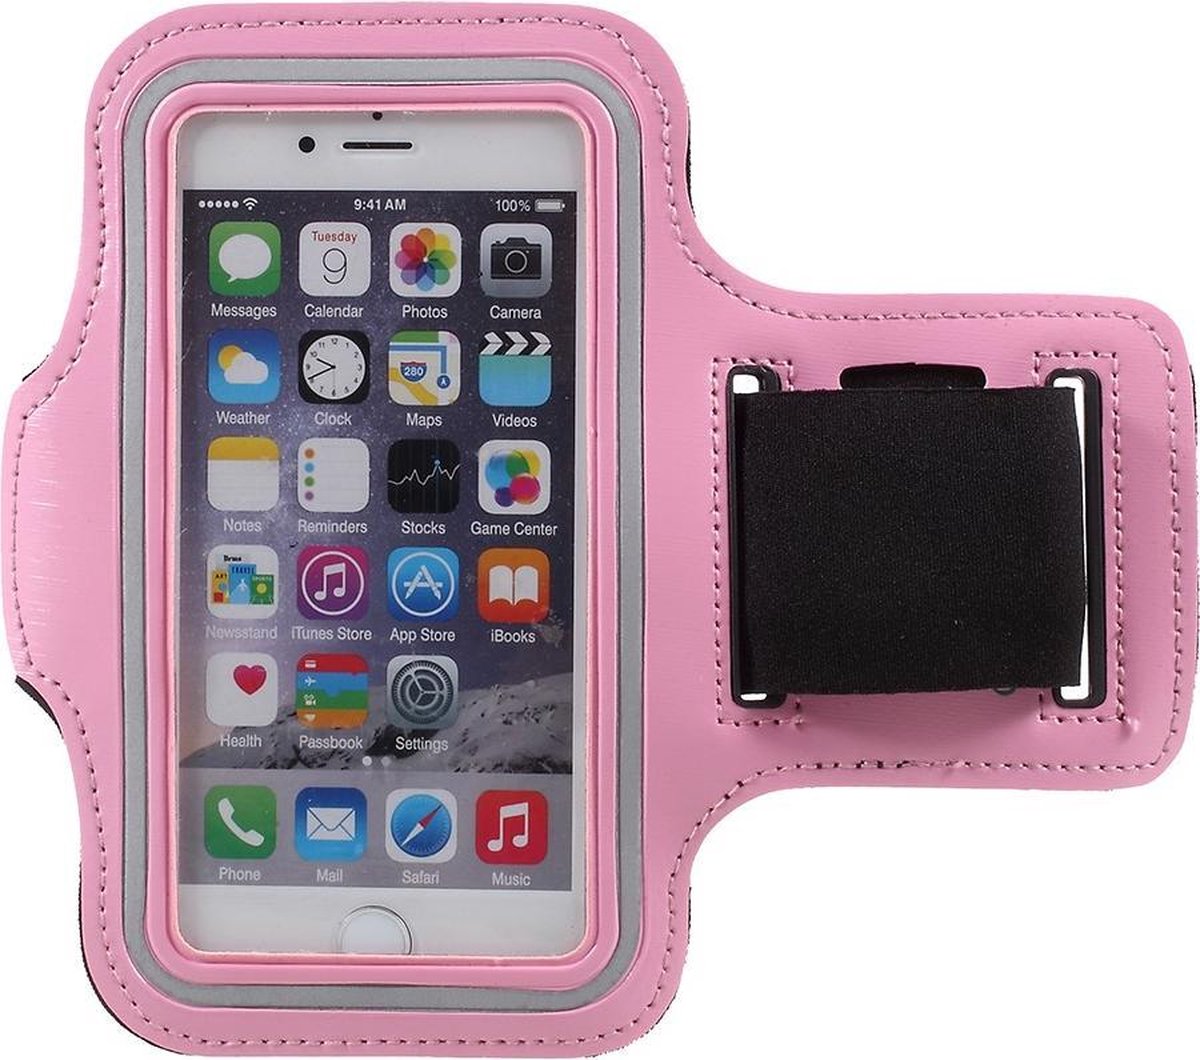 Sport armband voor iPhone 6 / 6s / 7 / 8 - roze